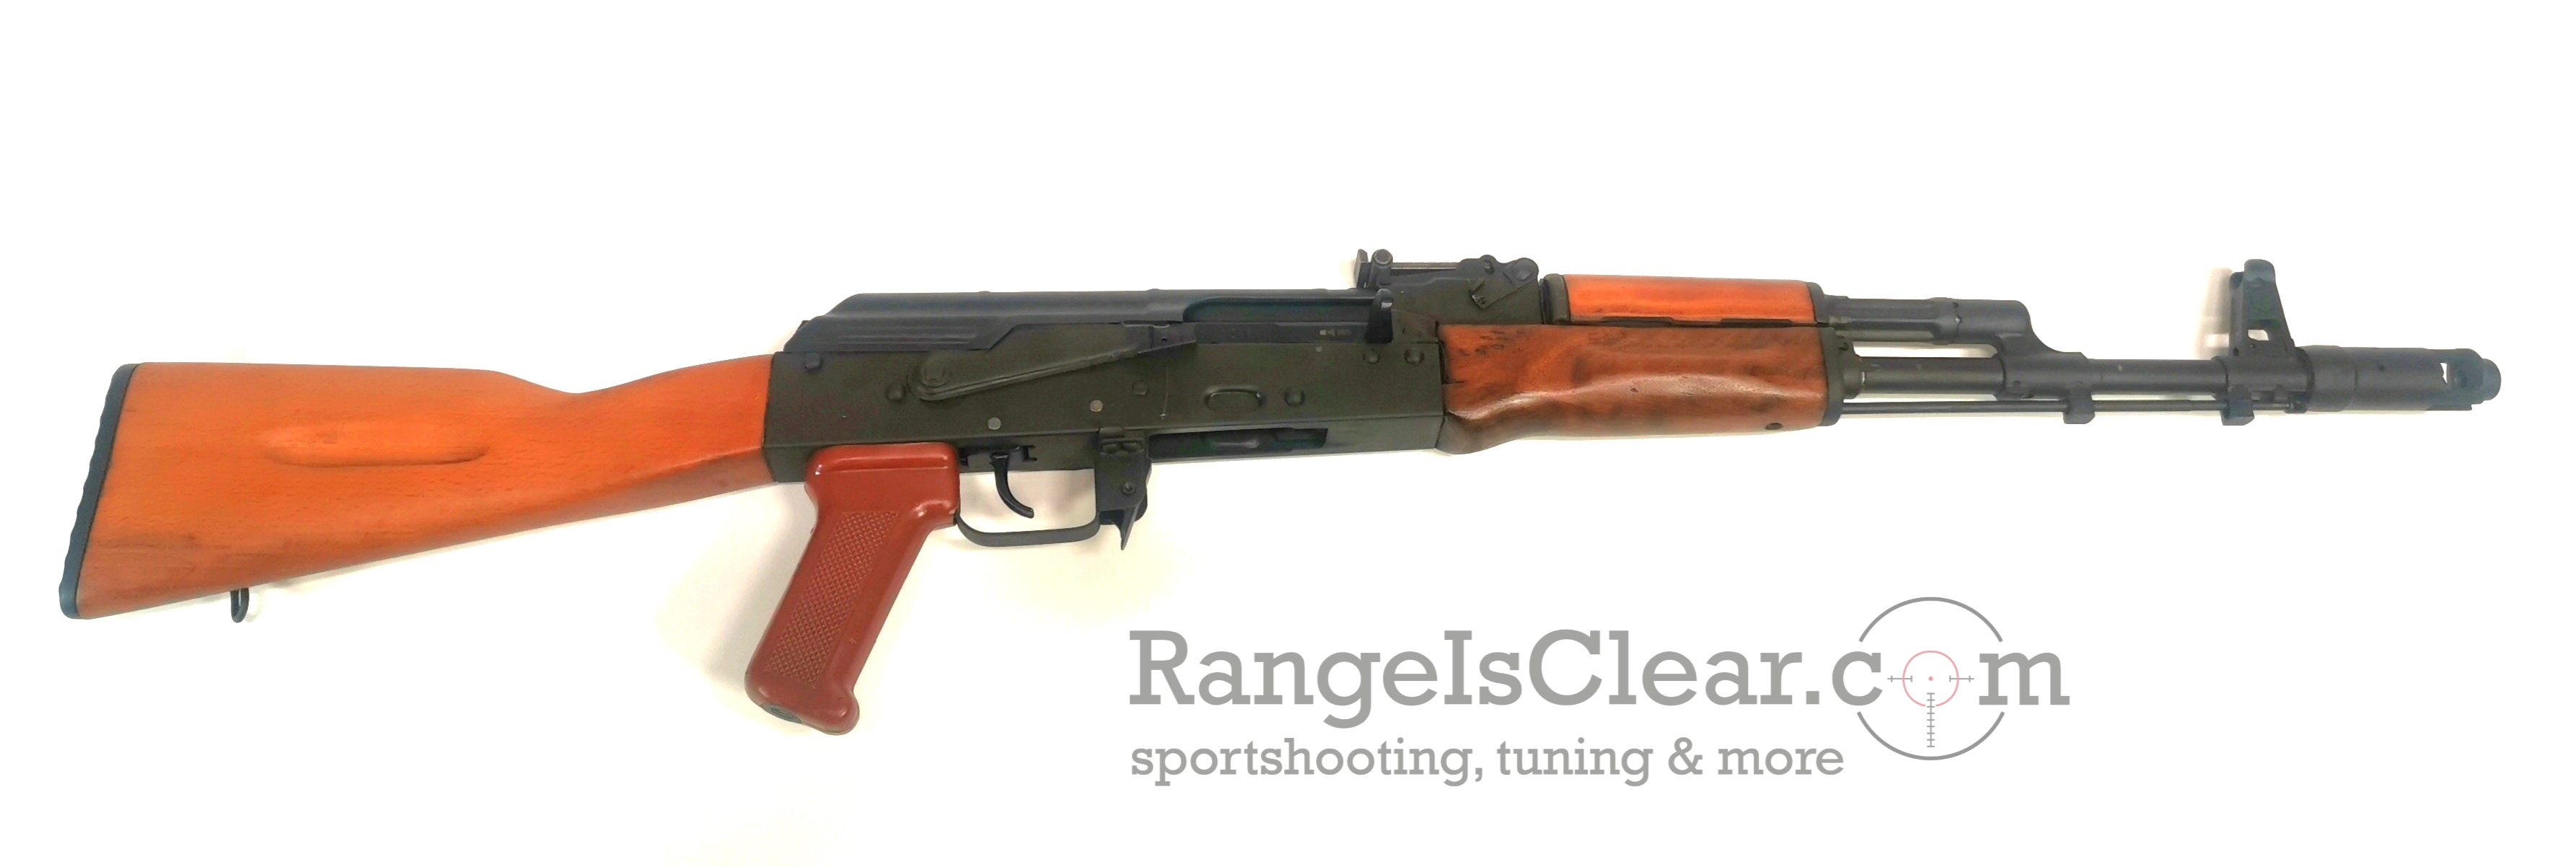 ISD LTD Bulgaria BSR 74 Sporting Rifle 5,45x39